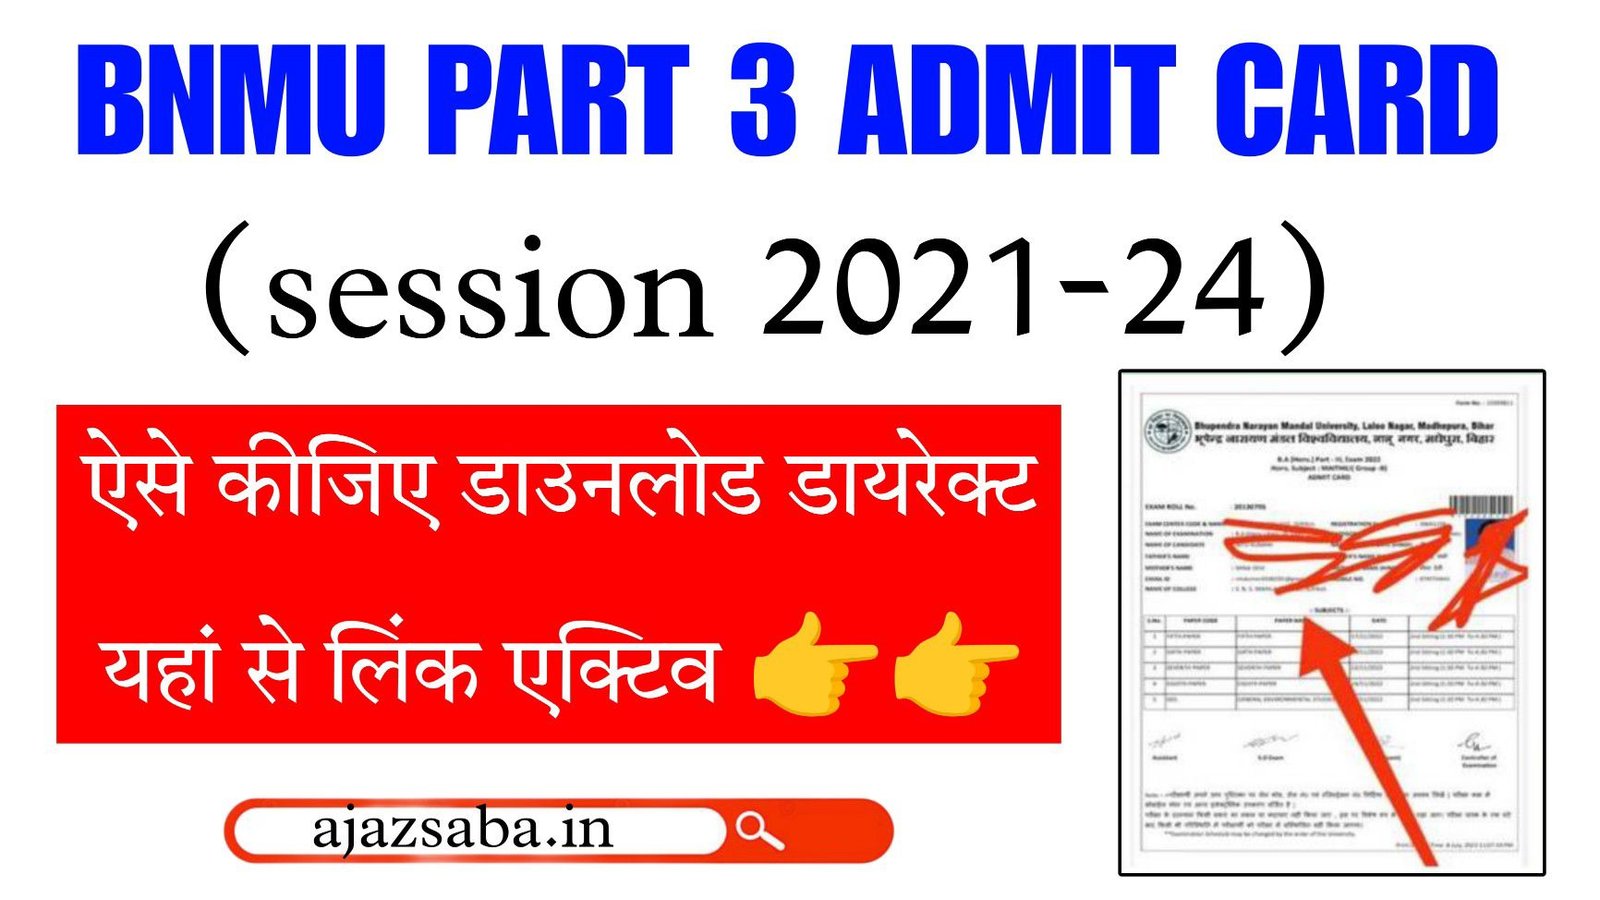 BNMU Part 3 Admit Card 2021-24